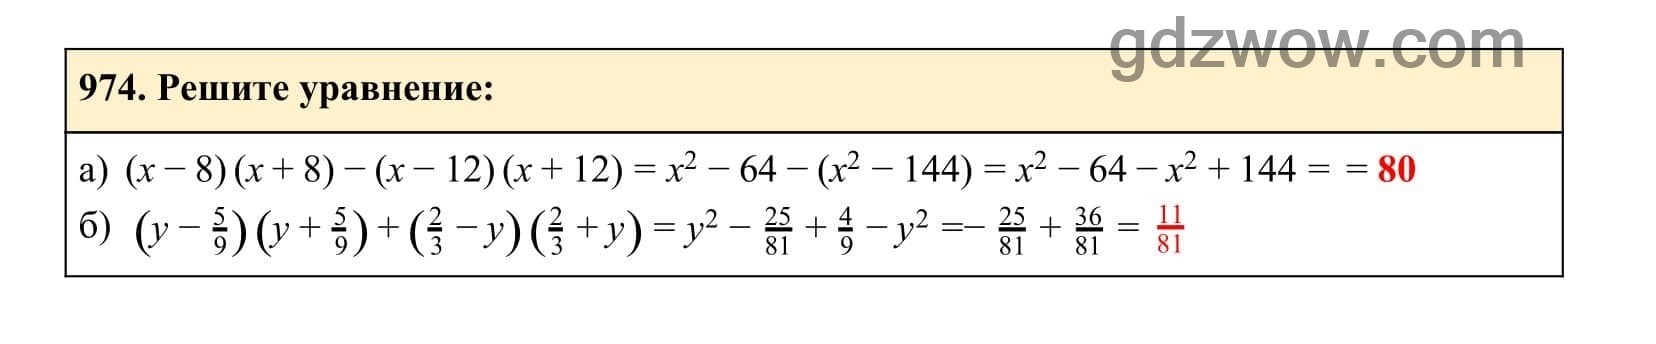 Упражнение 974 - ГДЗ по Алгебре 7 класс Учебник Макарычев (решебник) - GDZwow